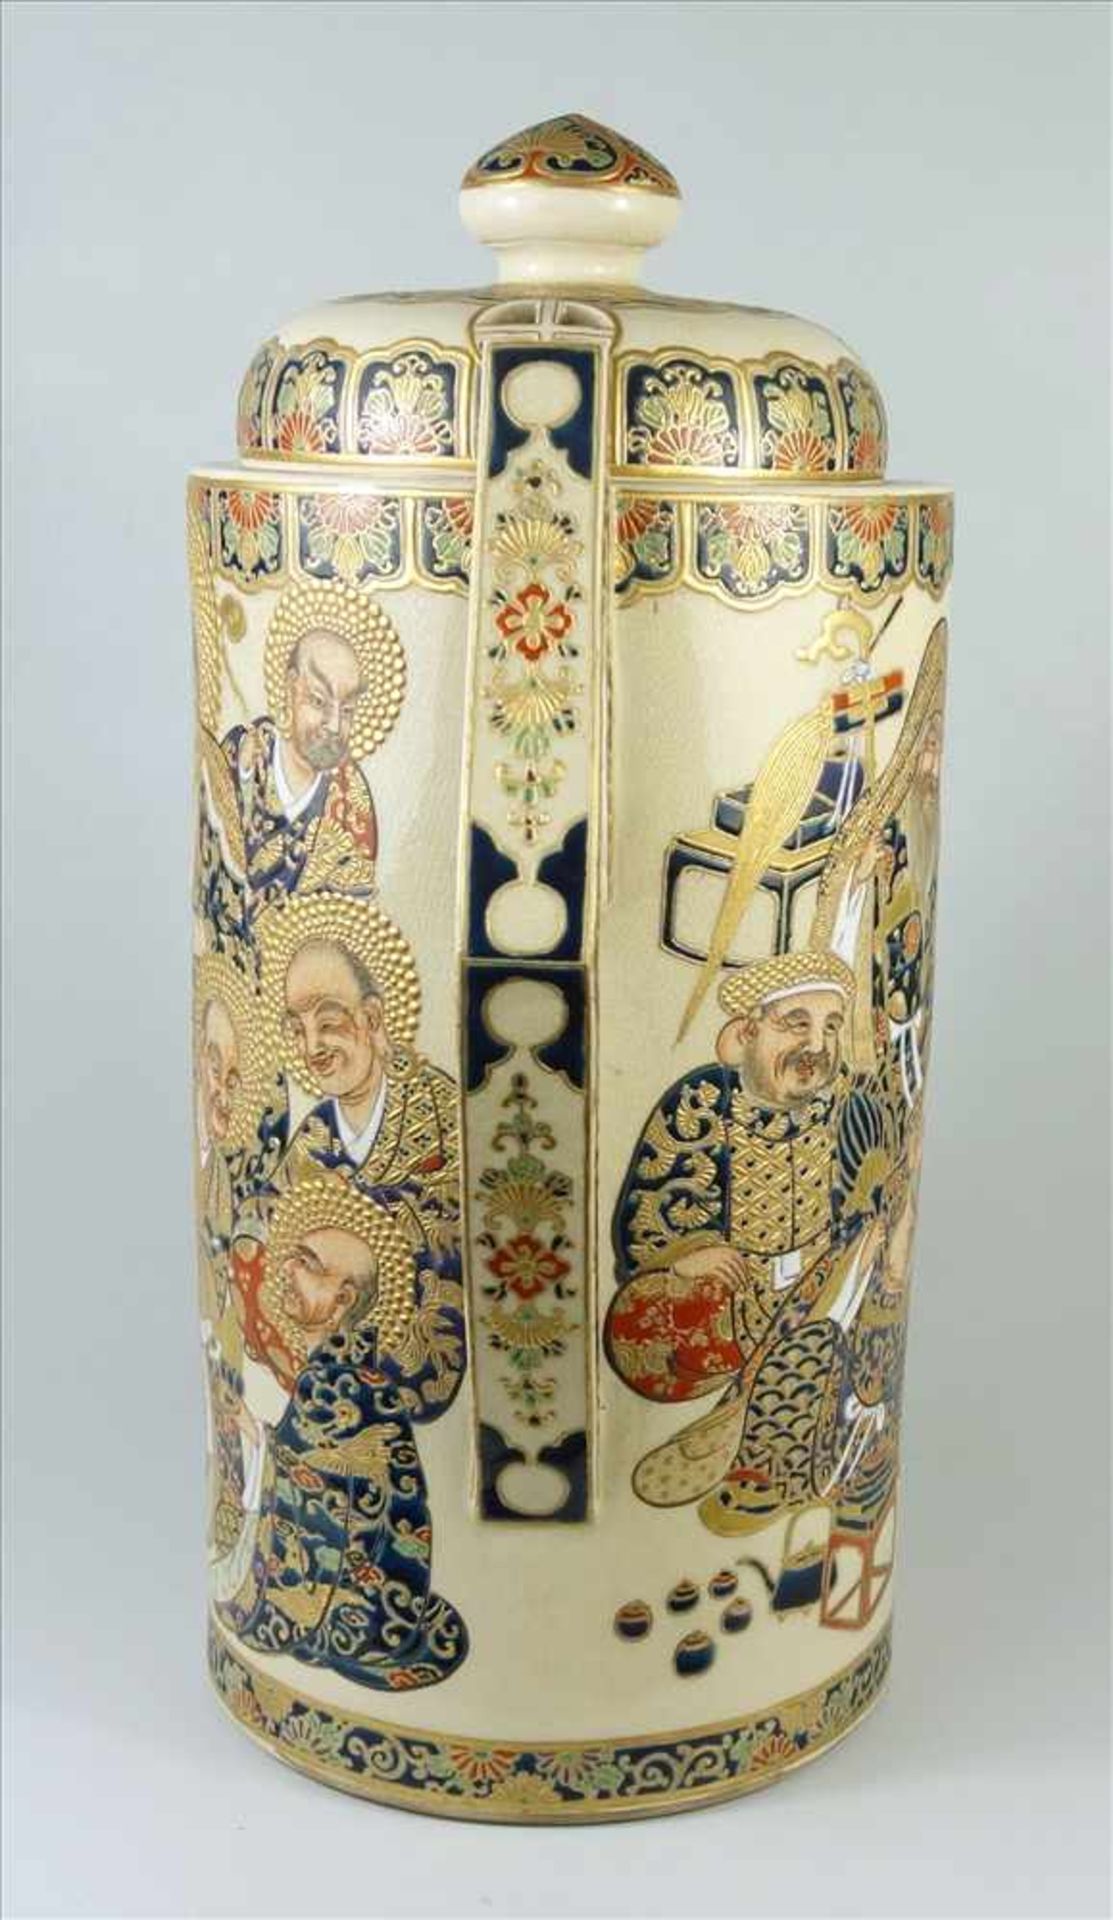 außergewöhnliches Satsuma- Deckelgefäß, Meji-Zeit, um 1900, Feinsteinzeug, zylindrischer Korpus - Bild 4 aus 7